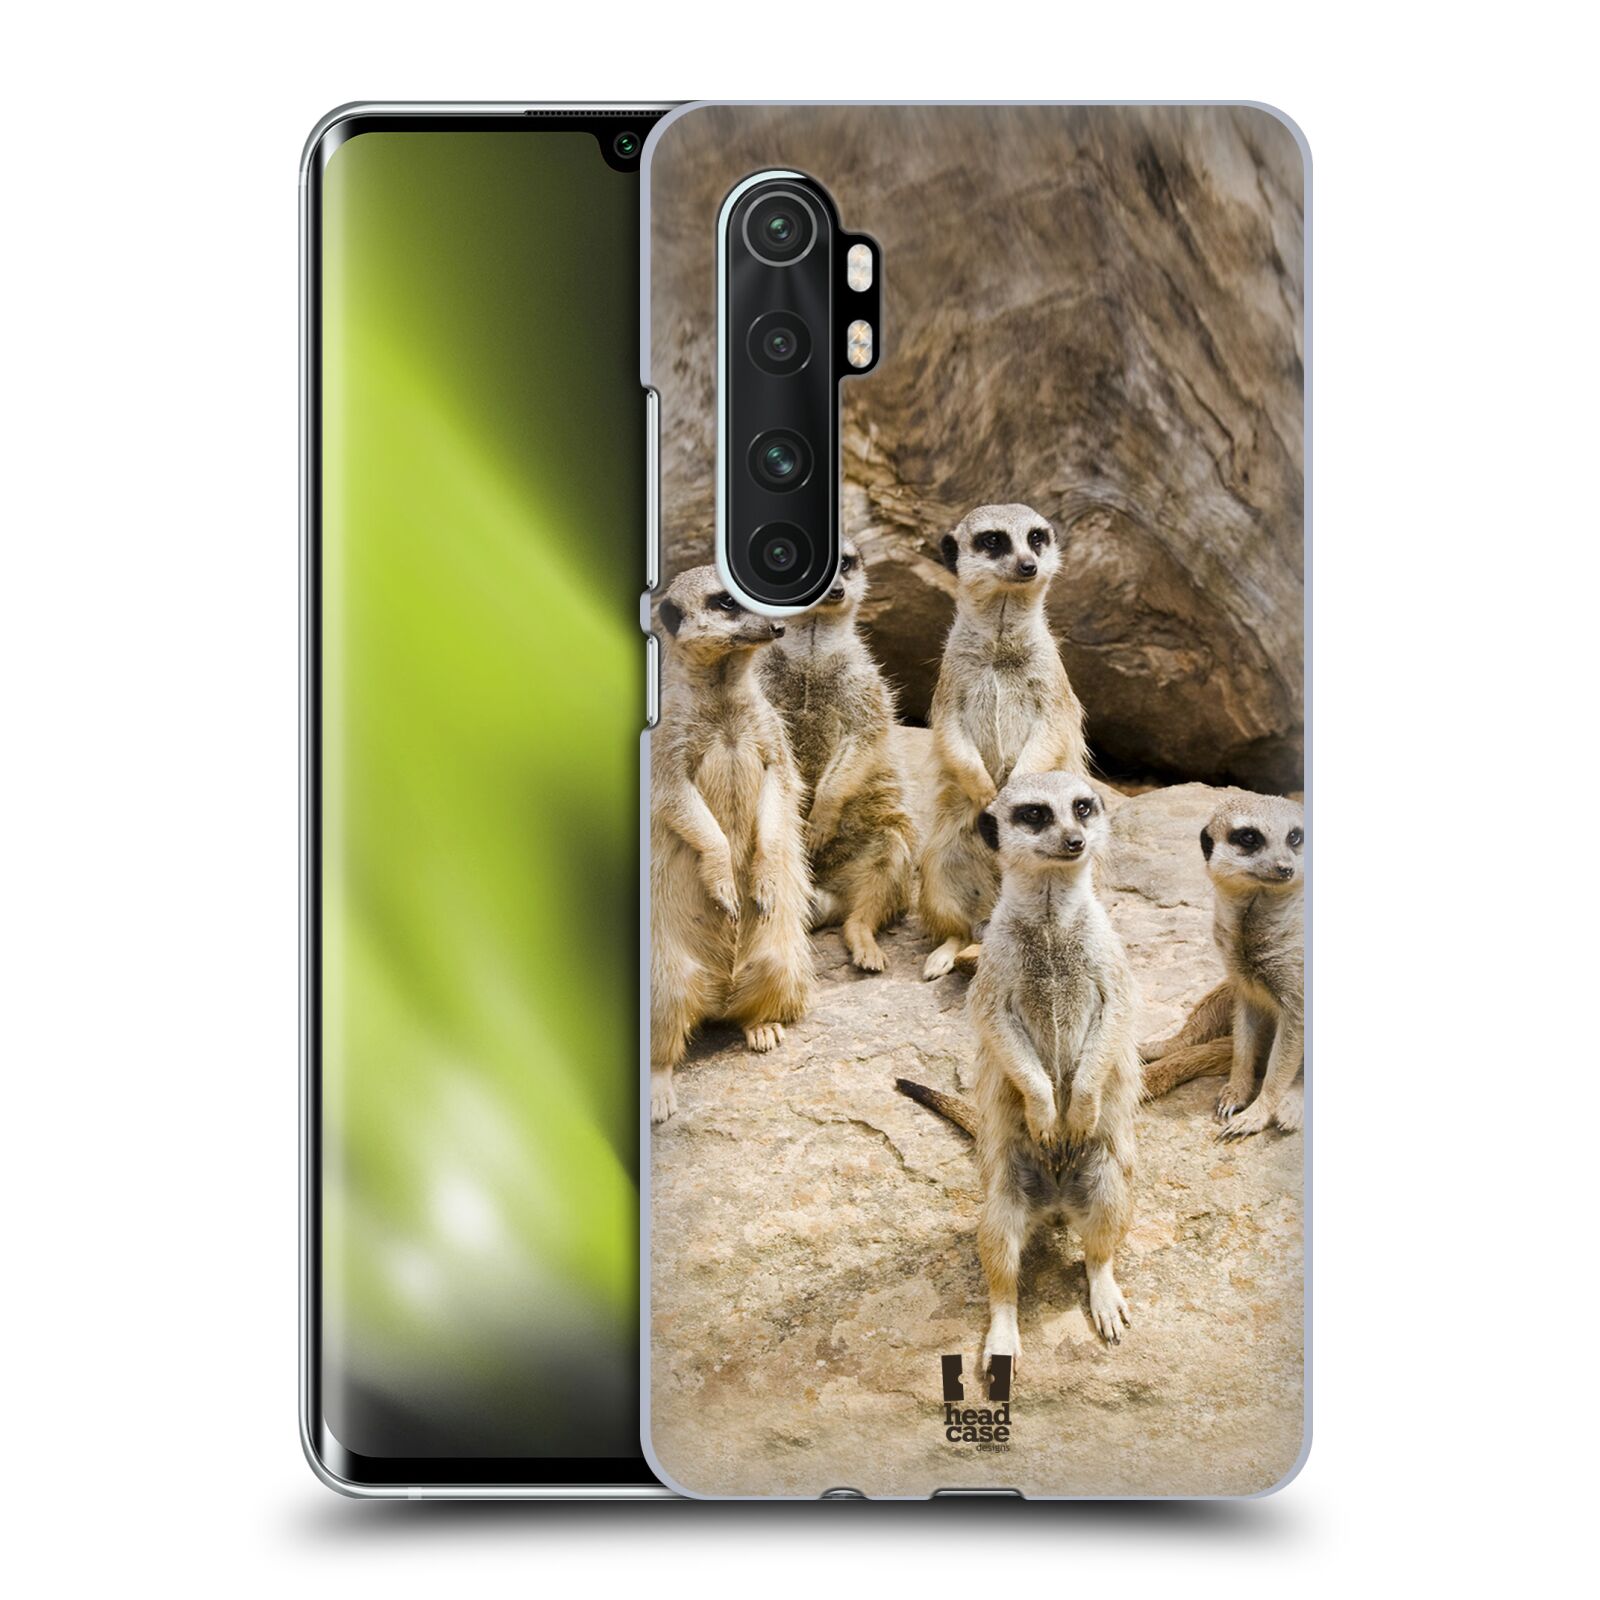 Zadní obal pro mobil Xiaomi Mi Note 10 LITE - HEAD CASE - Svět zvířat roztomilé surikaty